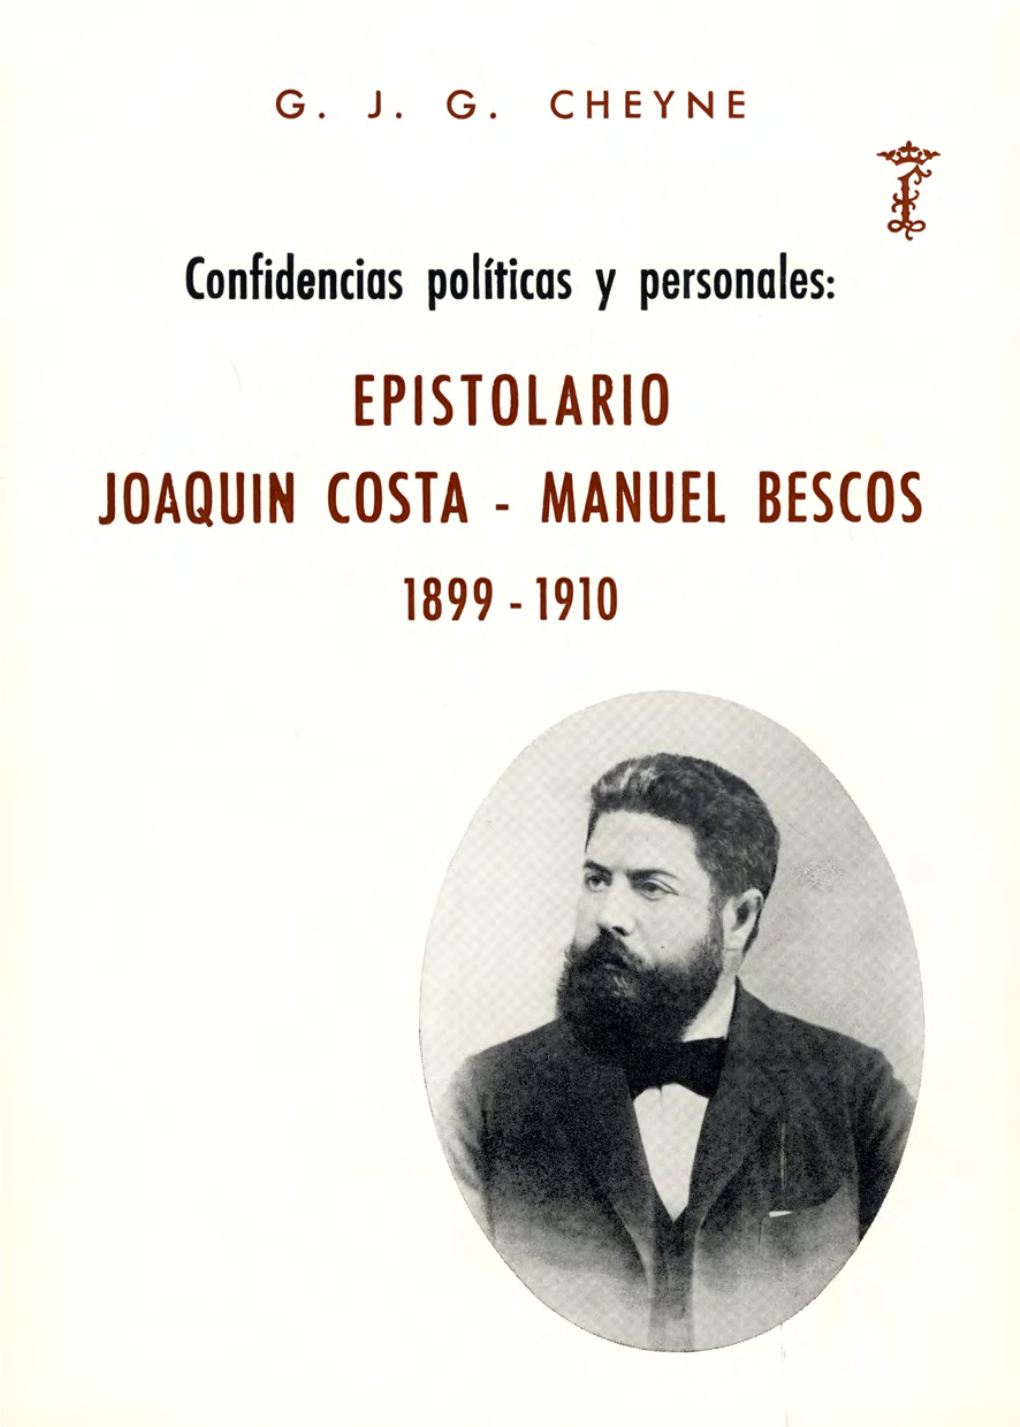 Epistolario Joaquín Costa - Manuel Bescós 1899 - 1910 G